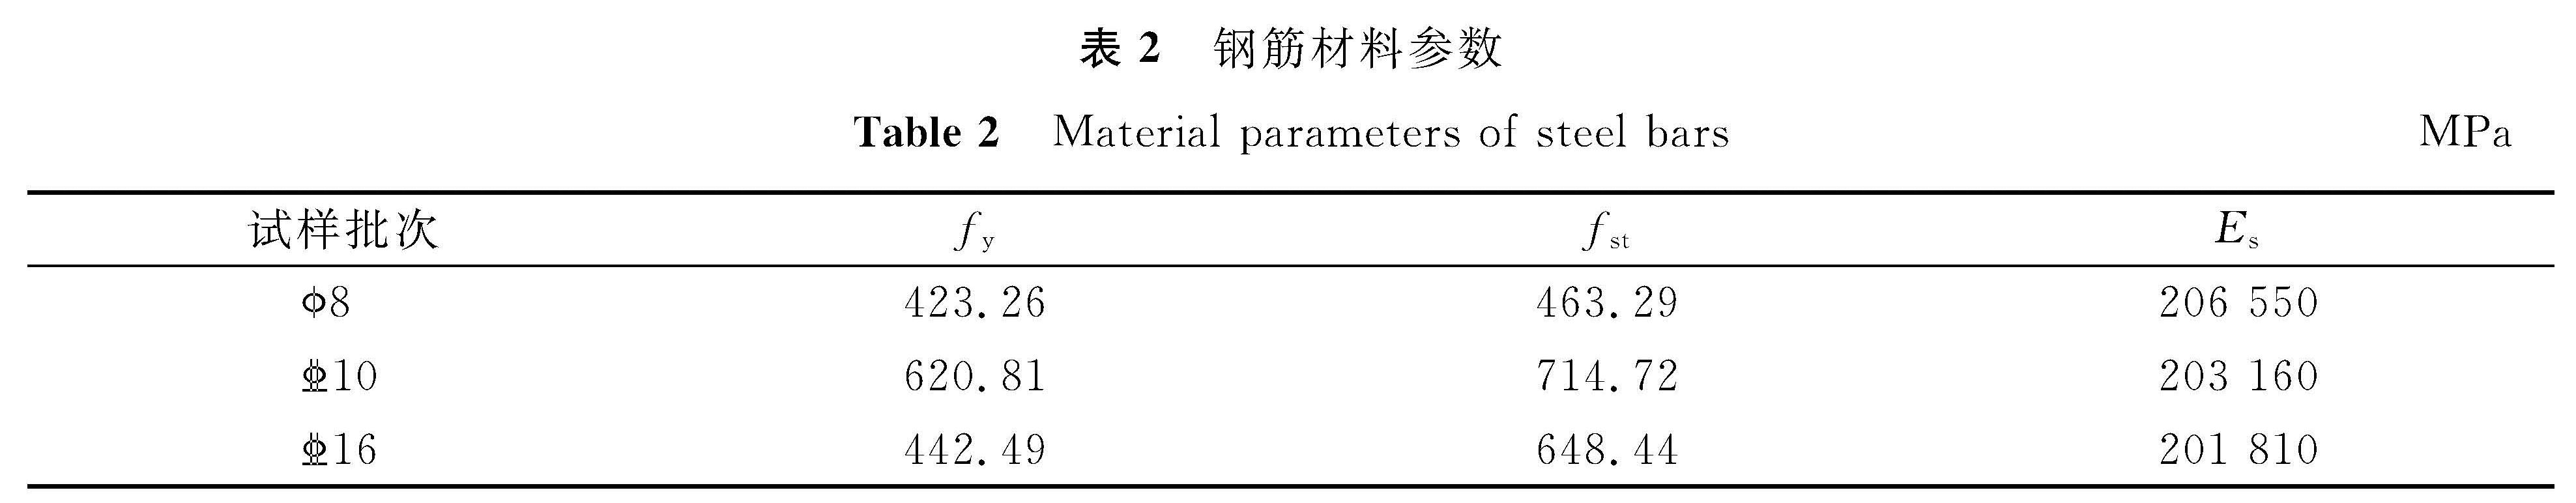 表2 钢筋材料参数<br/>Table 2 Material parameters of steel barsMPa